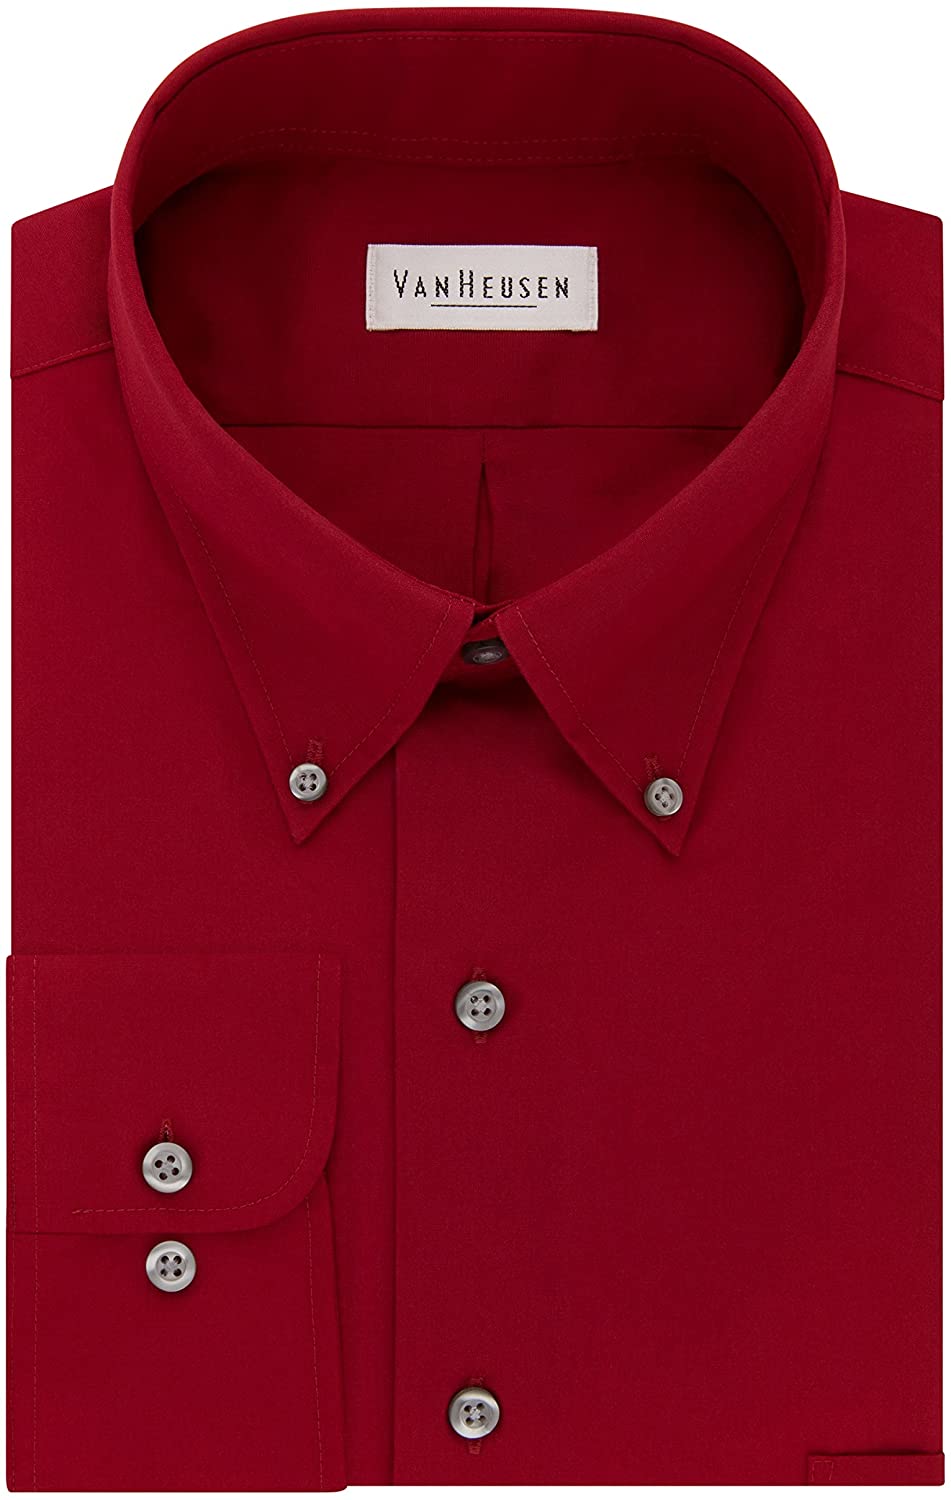 Van Heusen Men's Dress Shirts Regular Fit Silky Poplin Solid | eBay